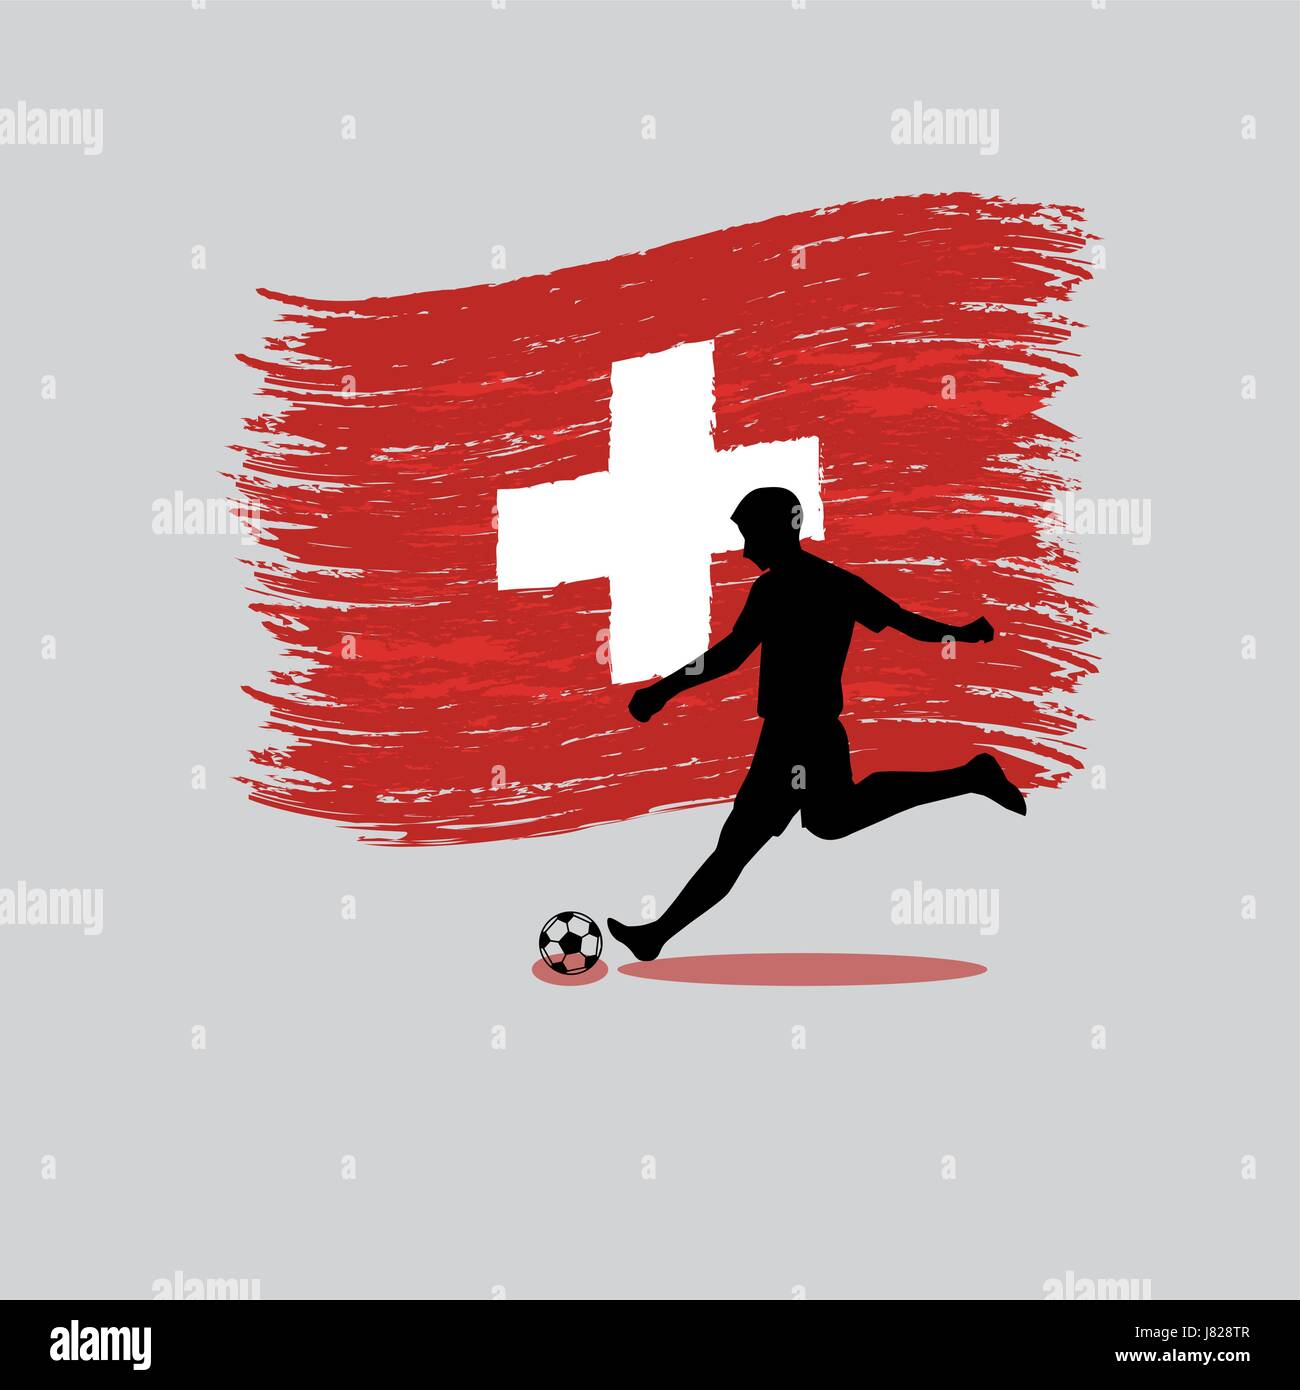 Fußball Spieler Action mit Schweizerischen Eidgenossenschaft Flagge auf Hintergrund Stock Vektor